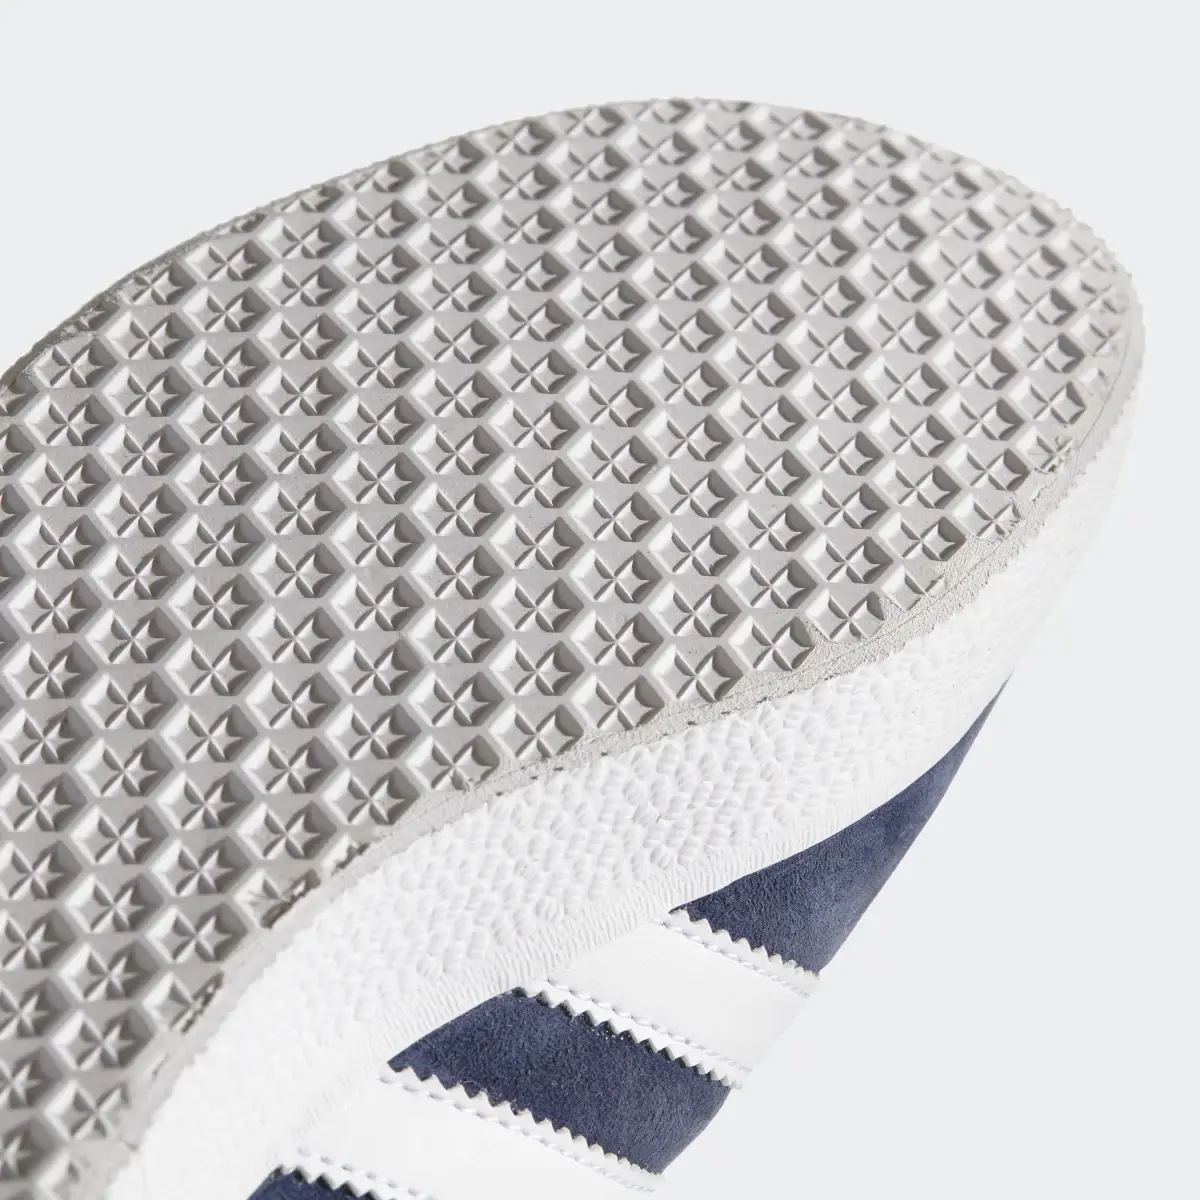 Adidas Gazelle Schuh. 3